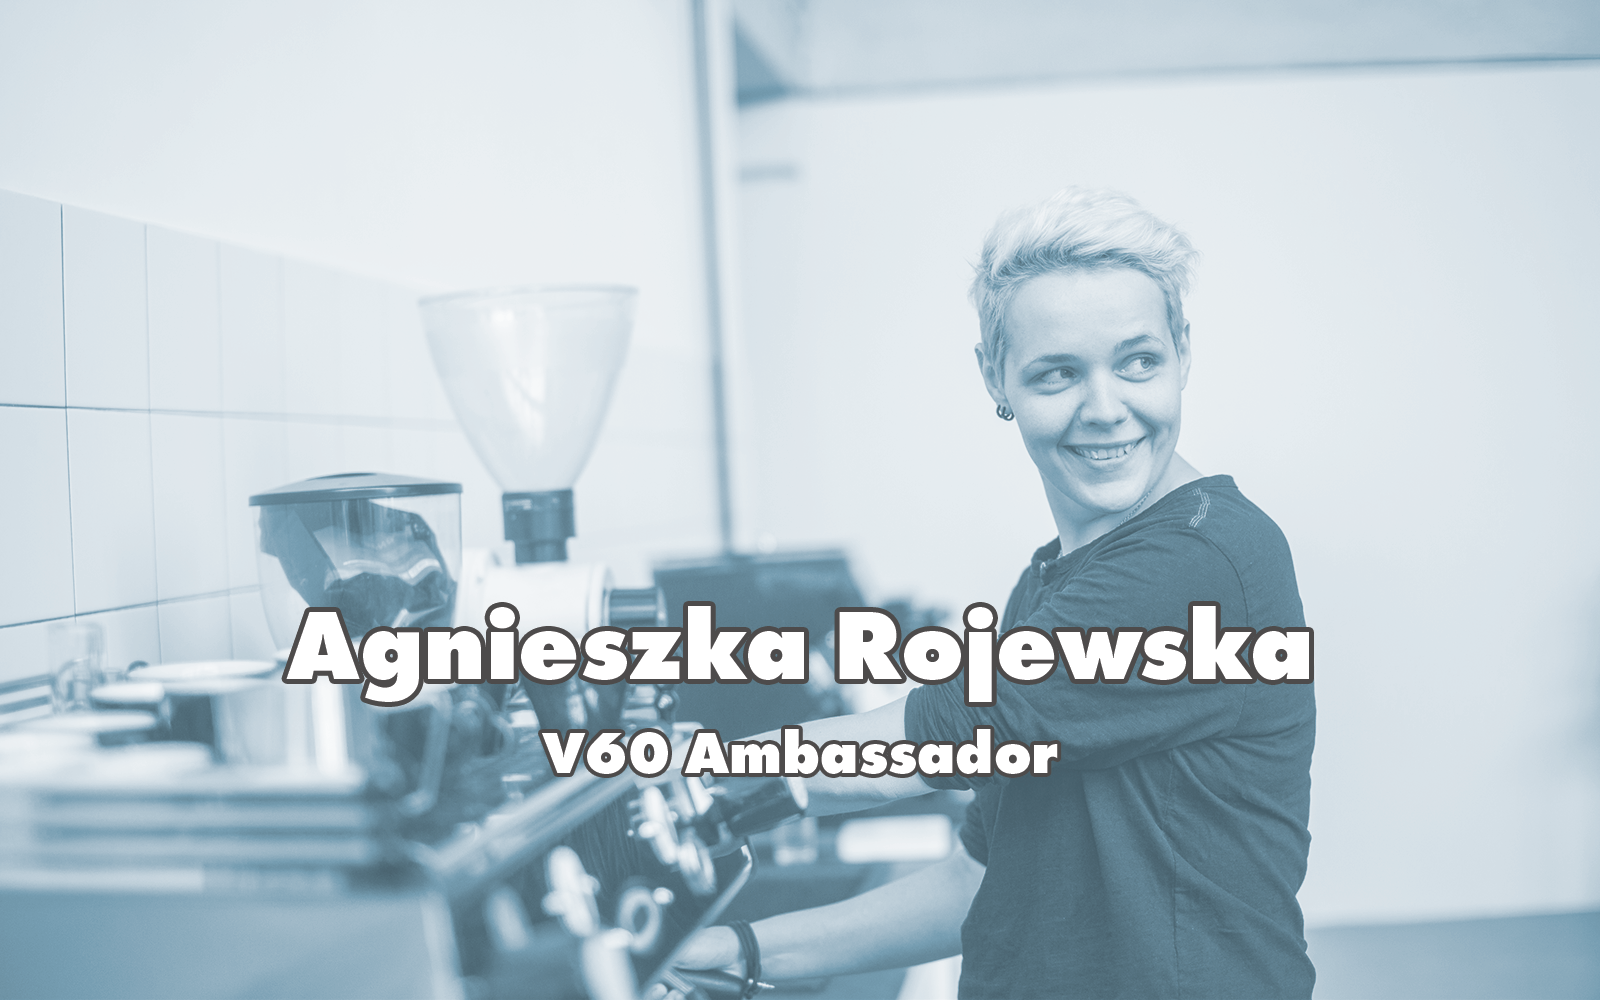 Agnieszka Rojewska - V60 Ambassador Q&A and V60 Recipe!